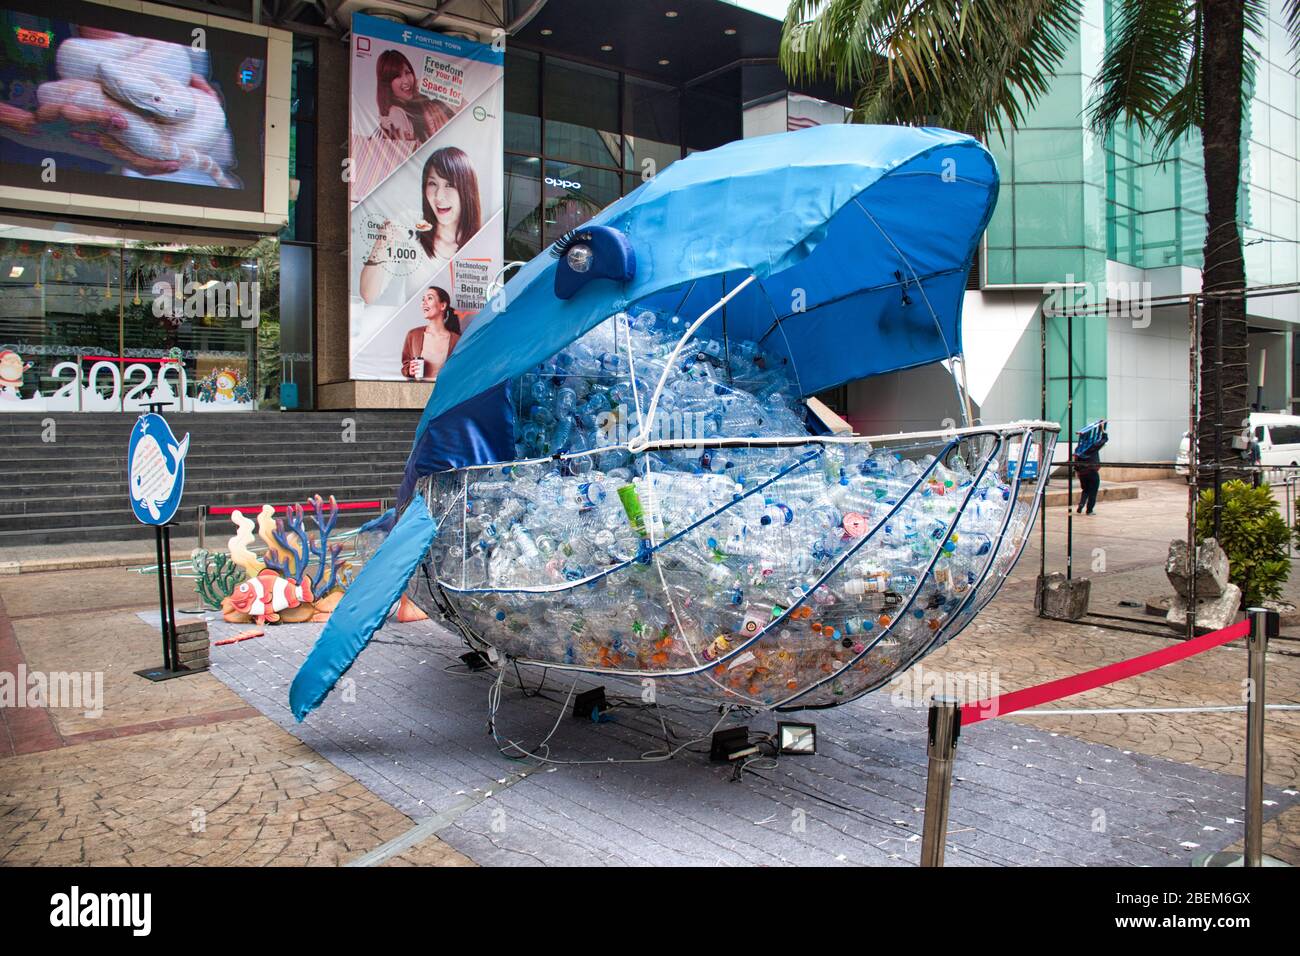 Bangkok, Thaïlande 04.12.2020: Collecte de bouteilles en PET à recycler dans un récipient géant en forme de baleine Banque D'Images